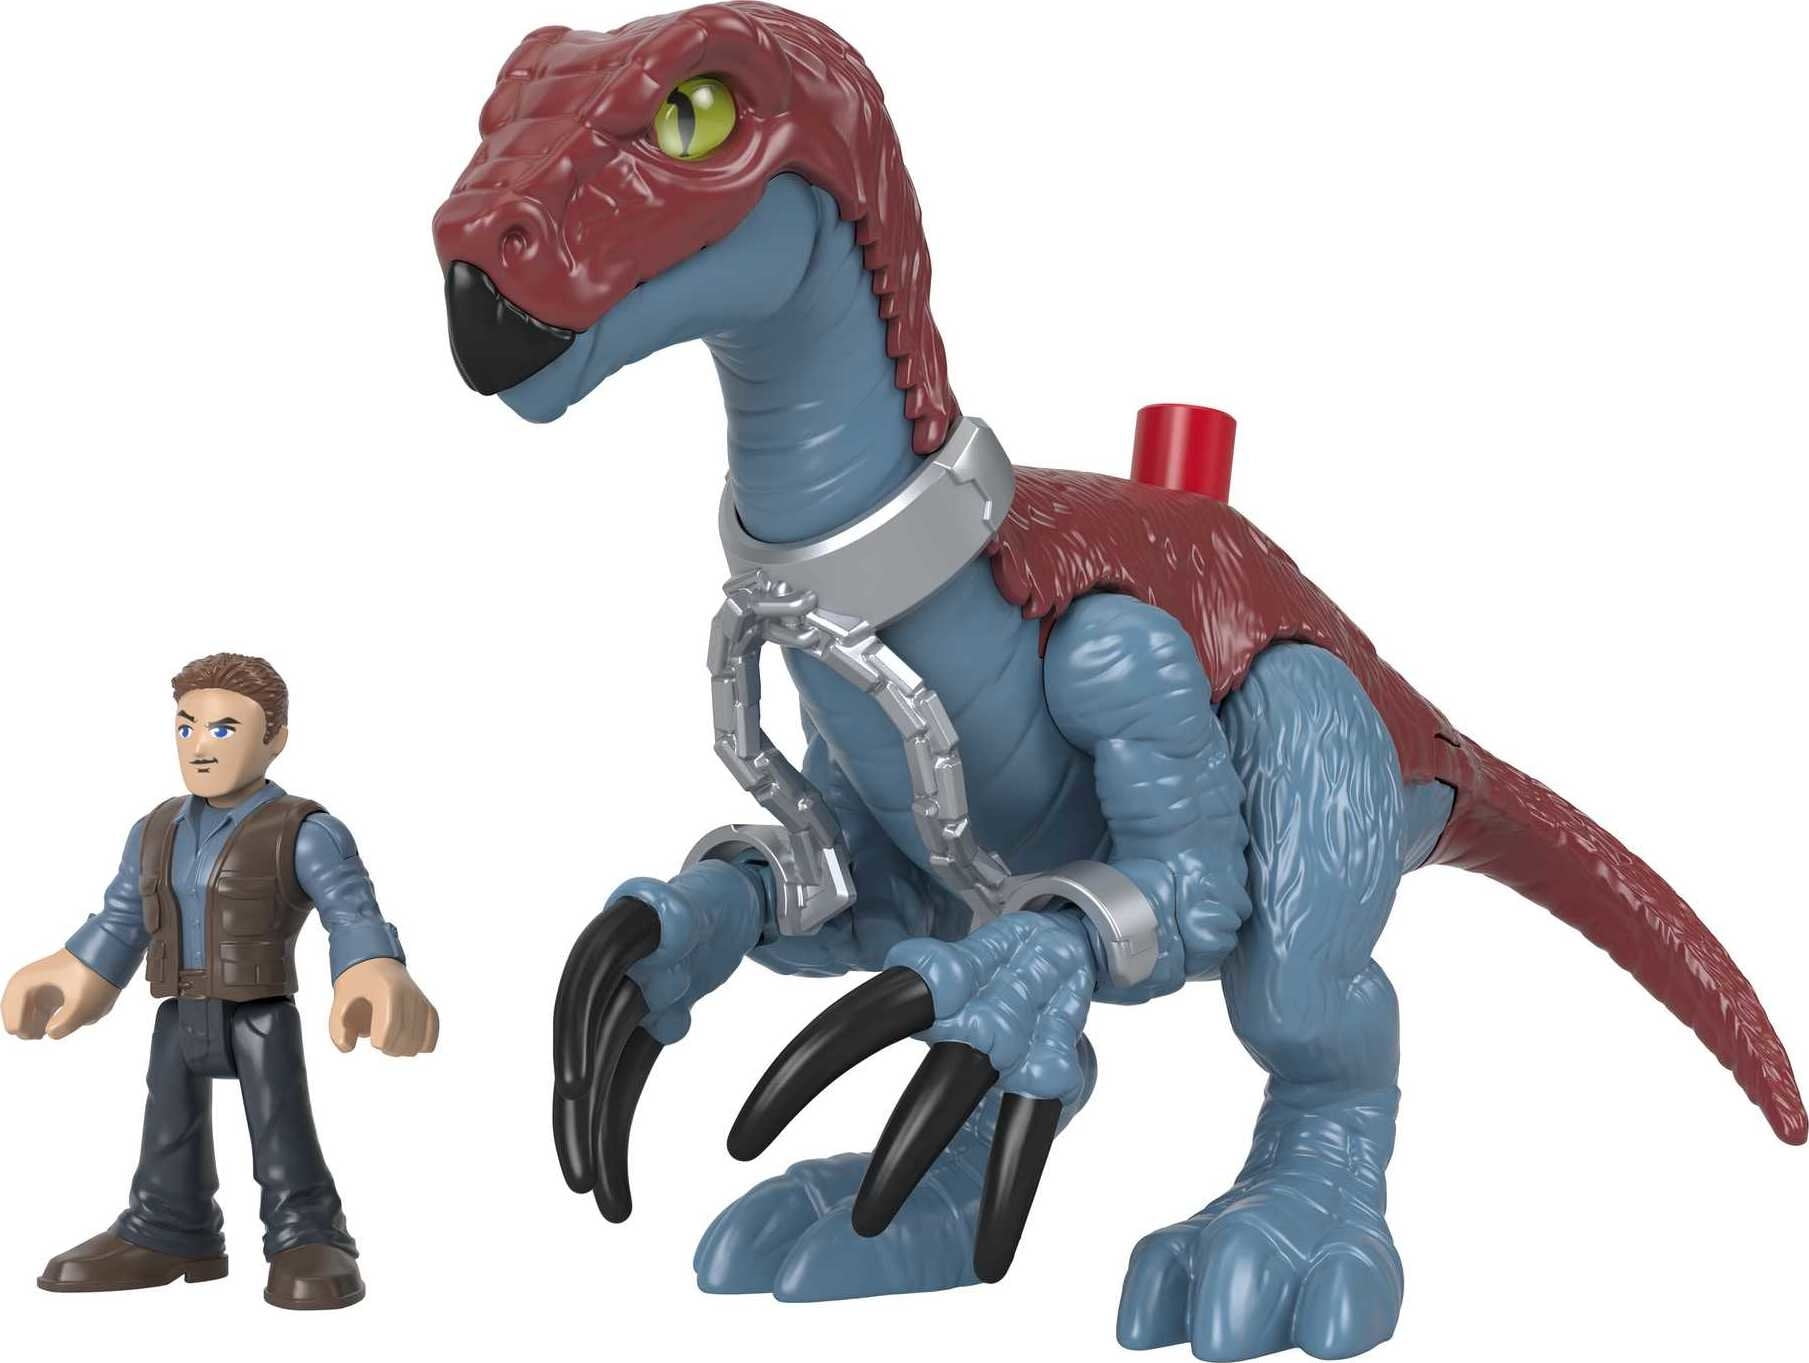 Kids T-Rex Dinosaur Lights Sounds Owen Jurassic World Imaginext Toy Fun Play New 